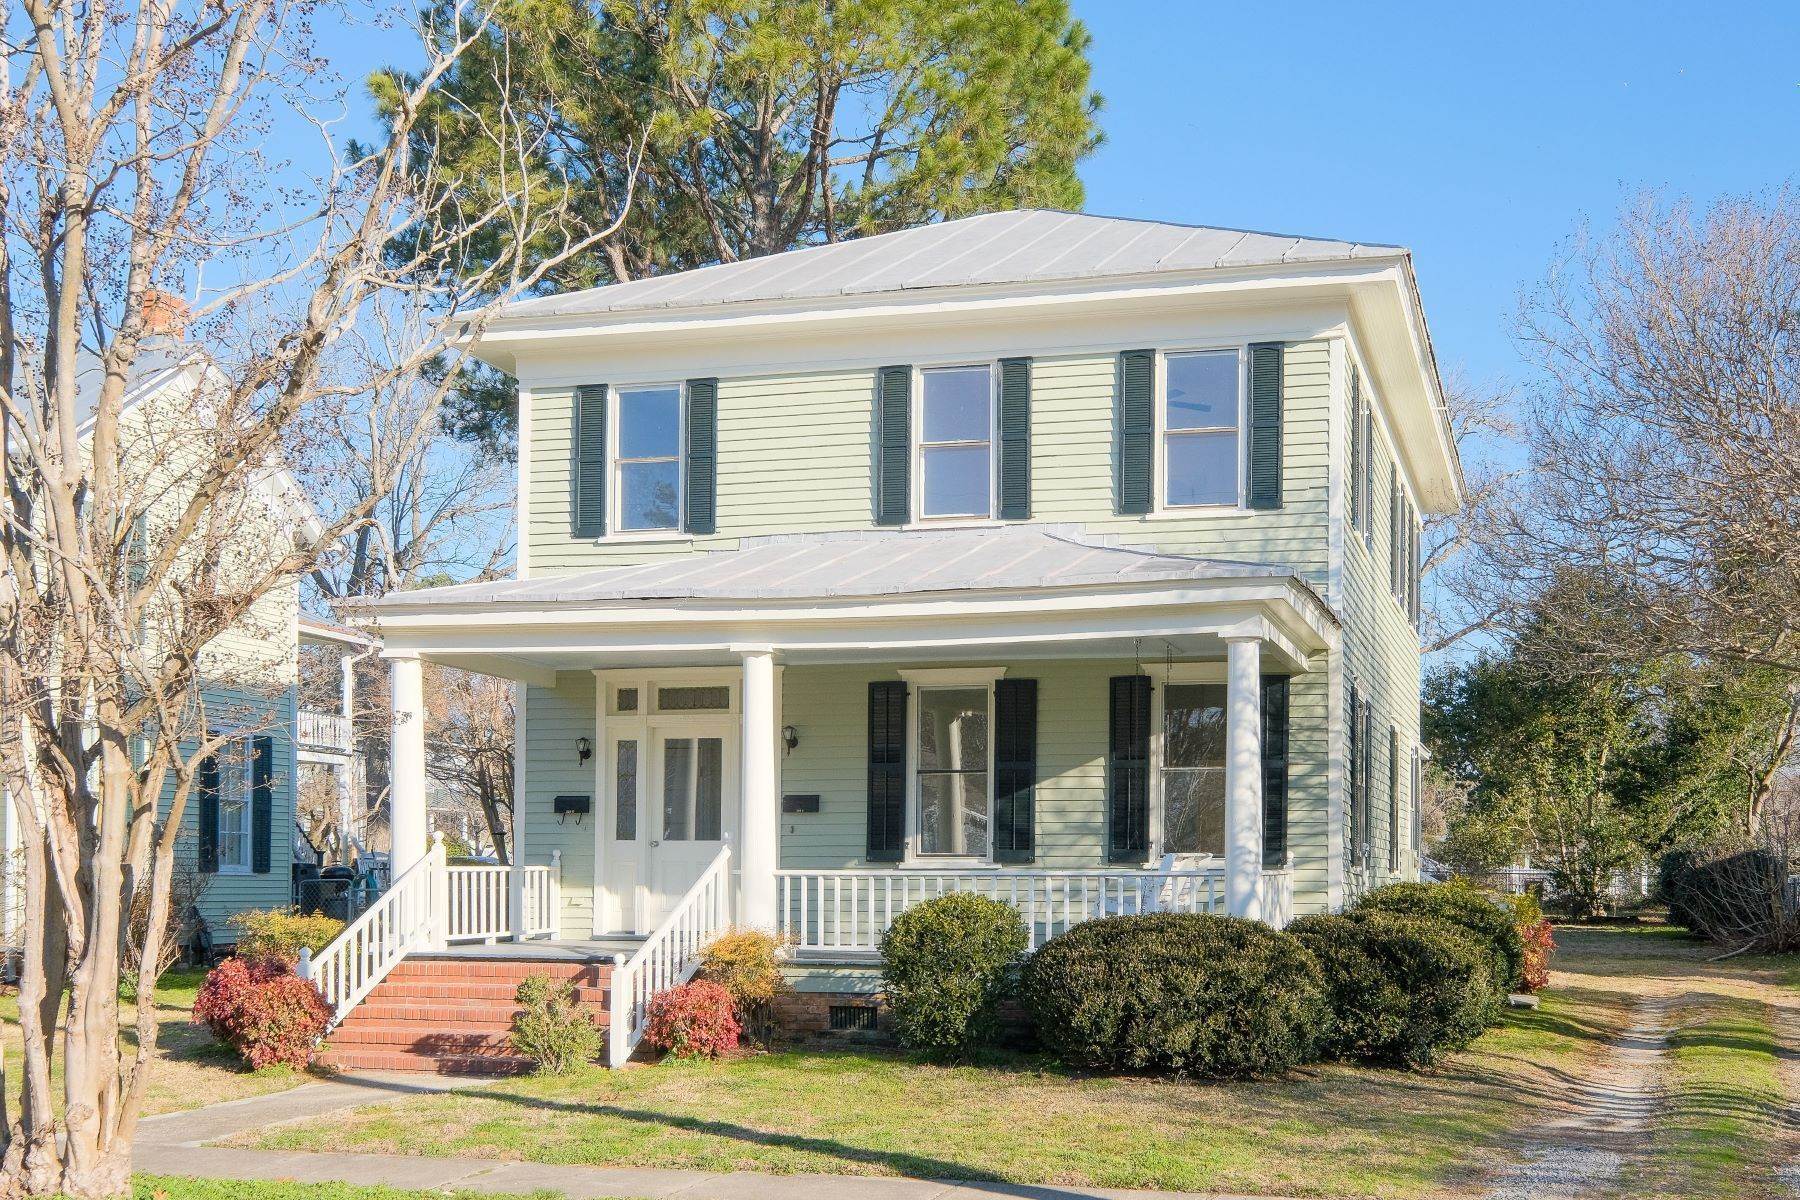 Property для того Продажа на Historic District Duplex 303 E. King Street Edenton, Северная Каролина 27932 Соединенные Штаты